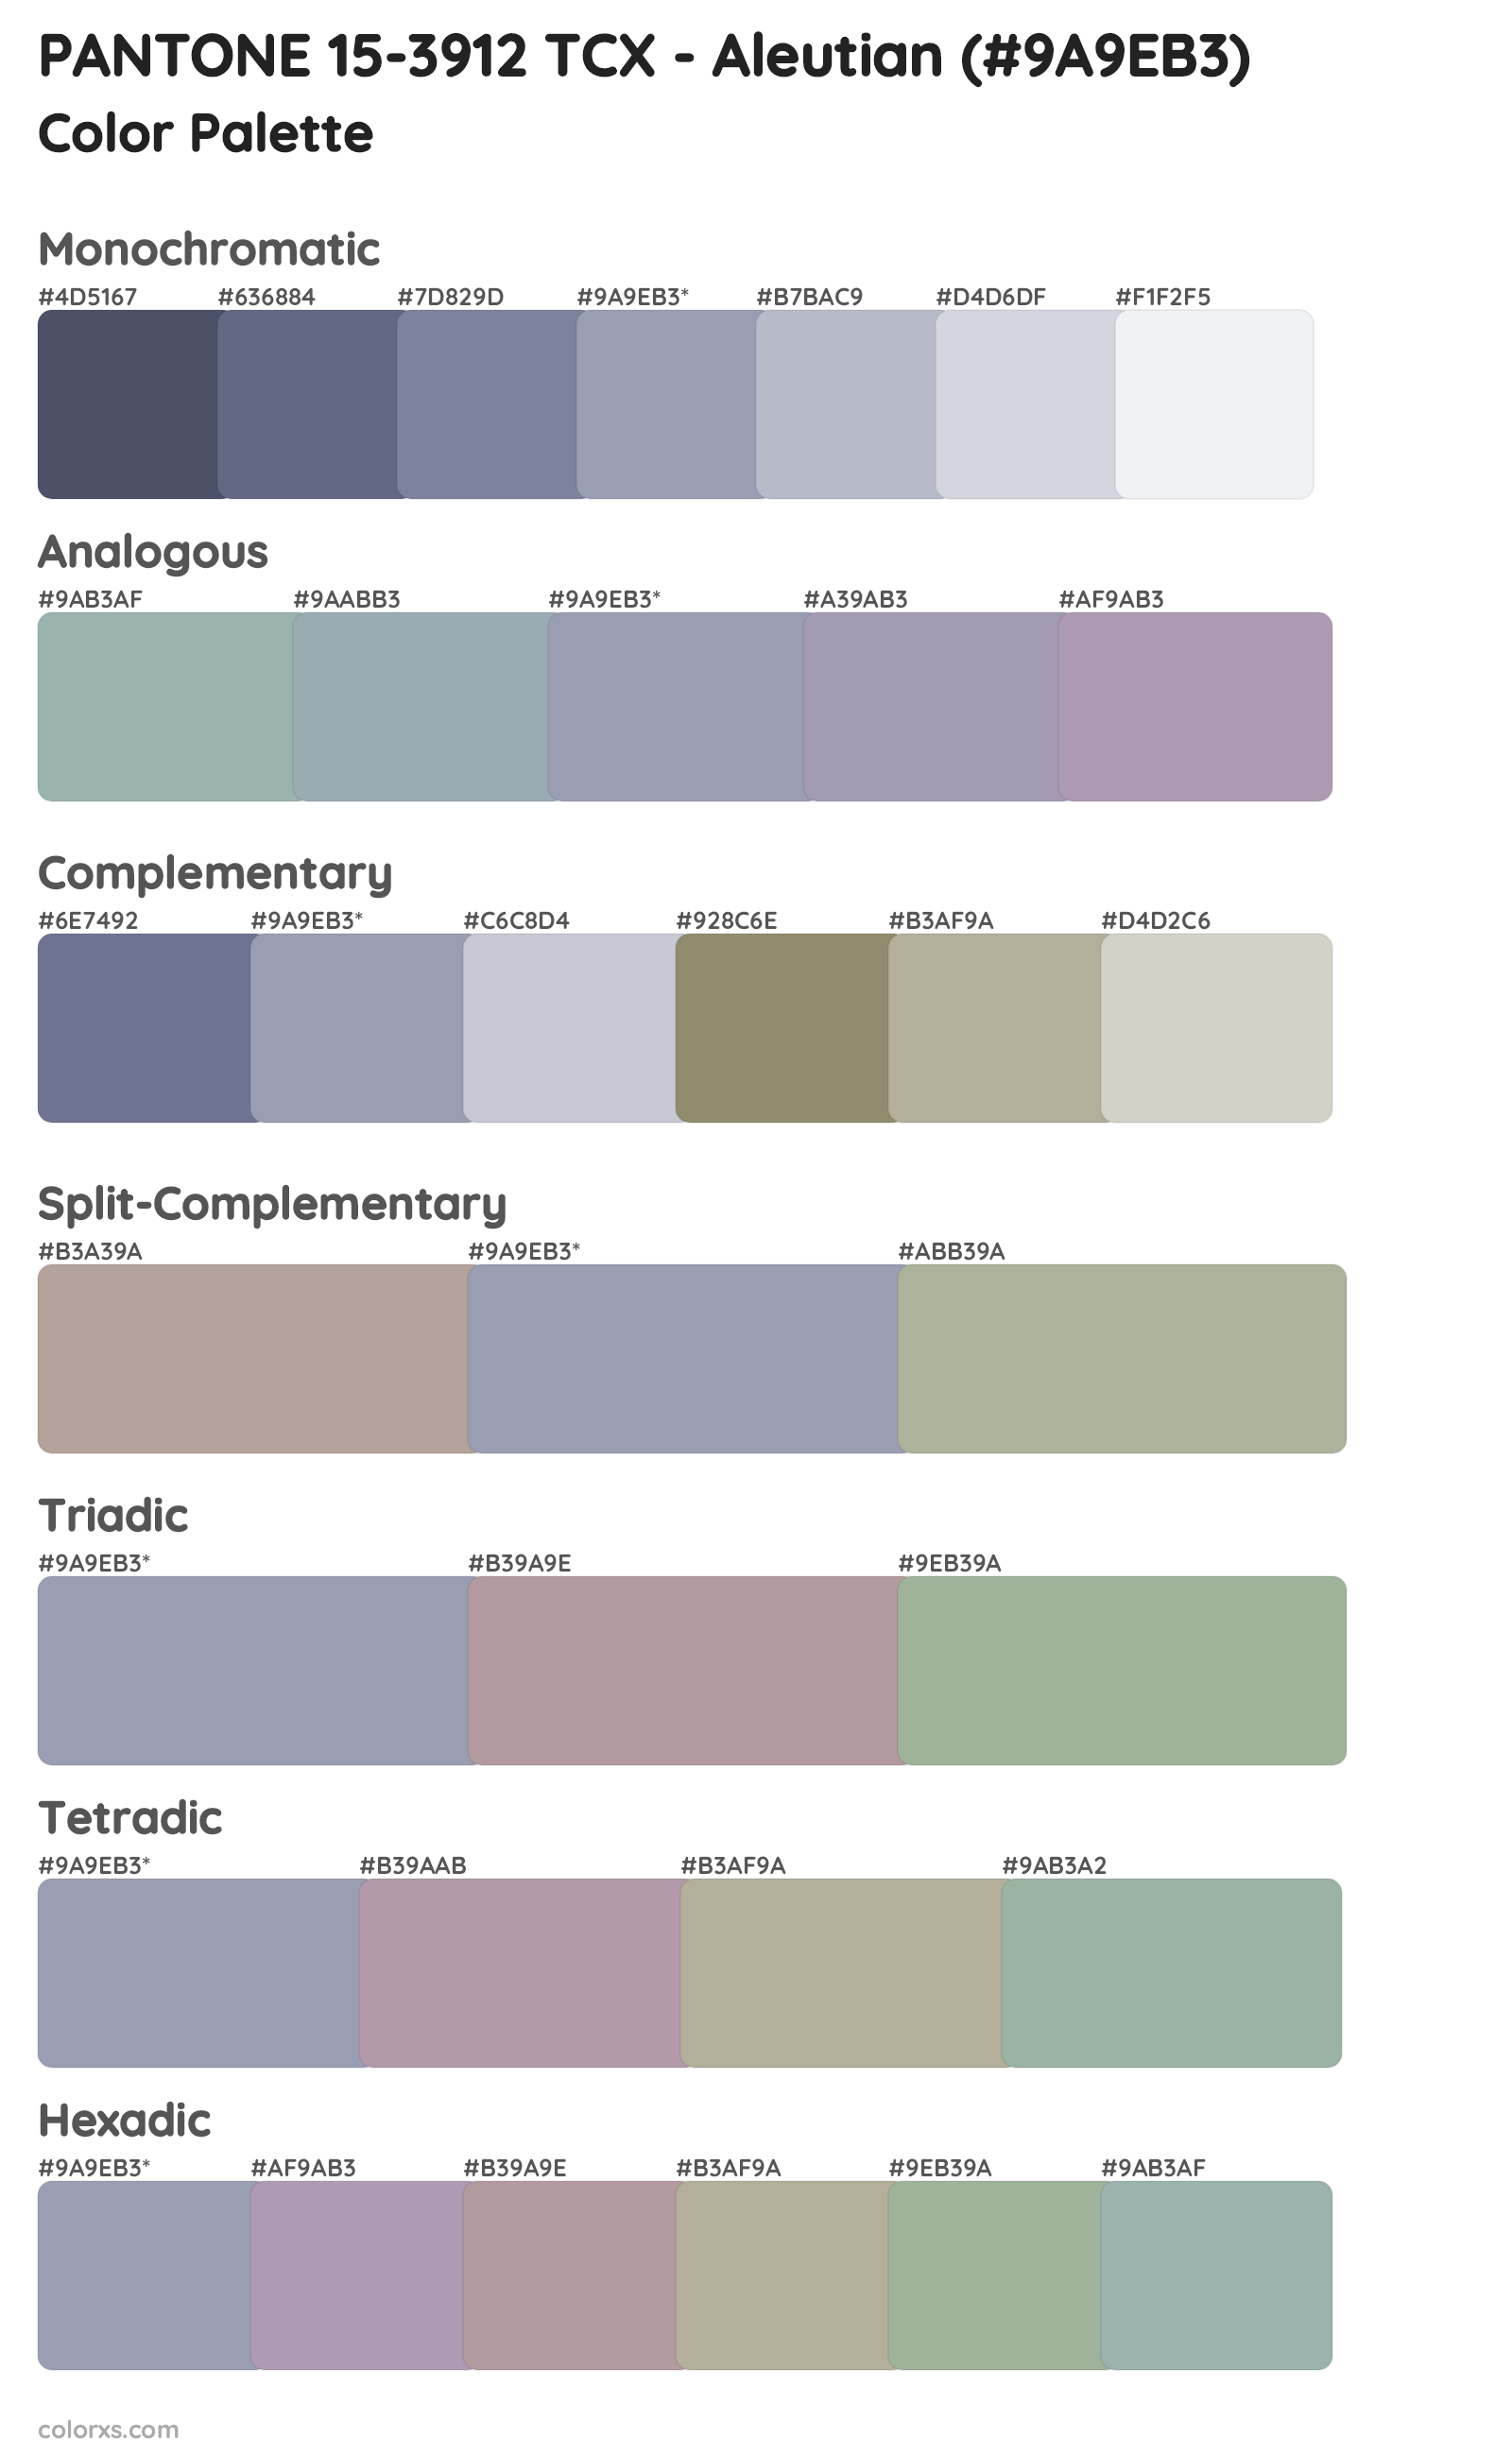 PANTONE 15-3912 TCX - Aleutian Color Scheme Palettes